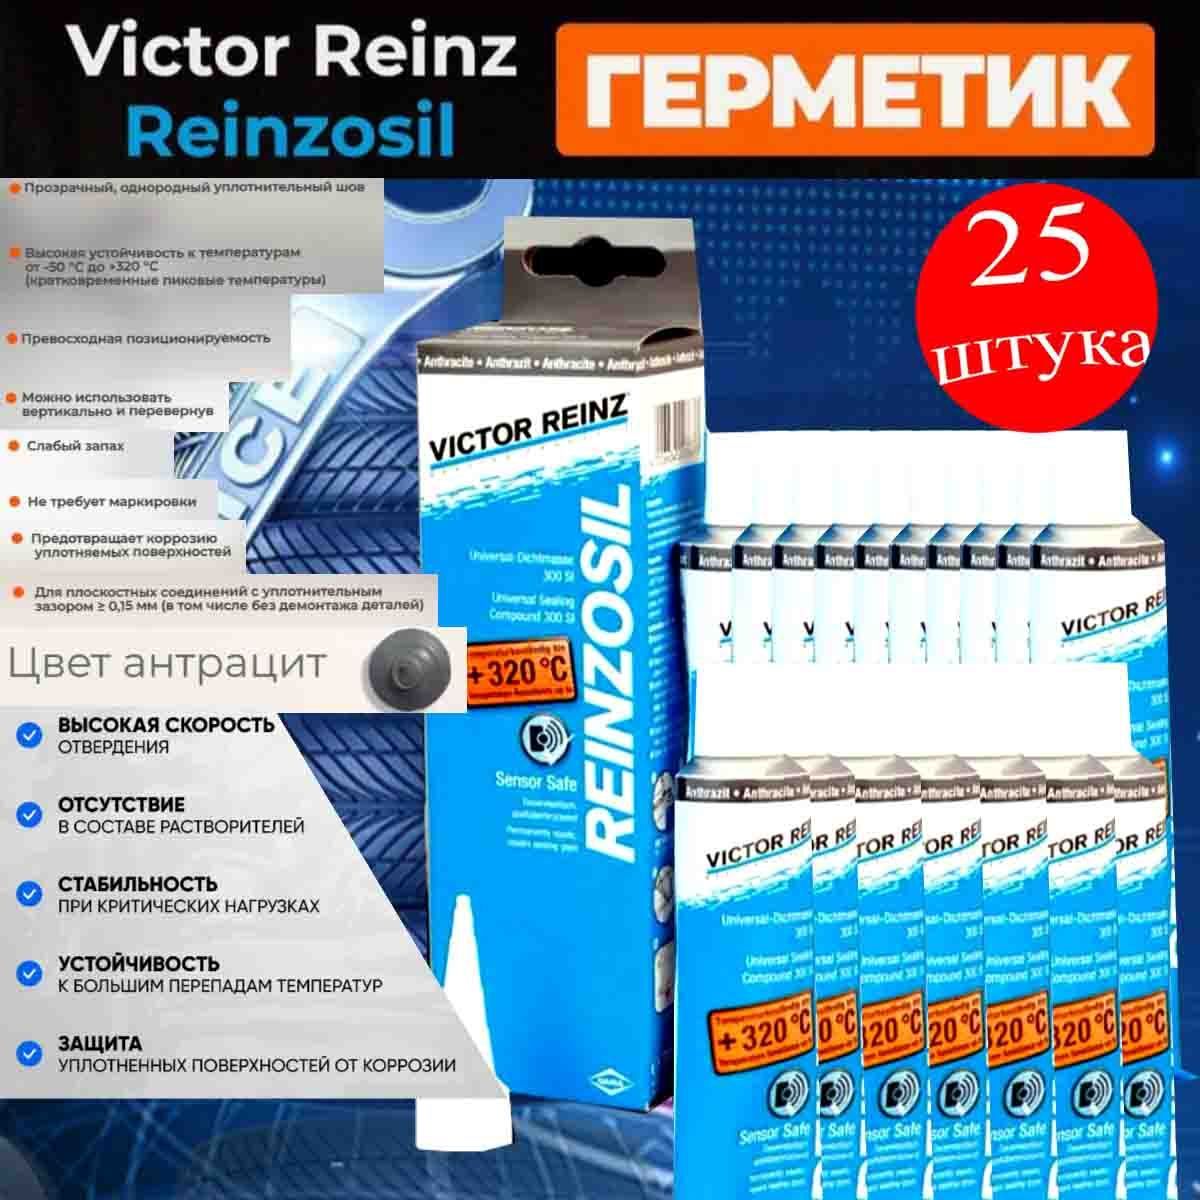 Герметик Reinzosil 320. Reinzosil +320. Инструкция по применению герметик Reinzosil на русском.